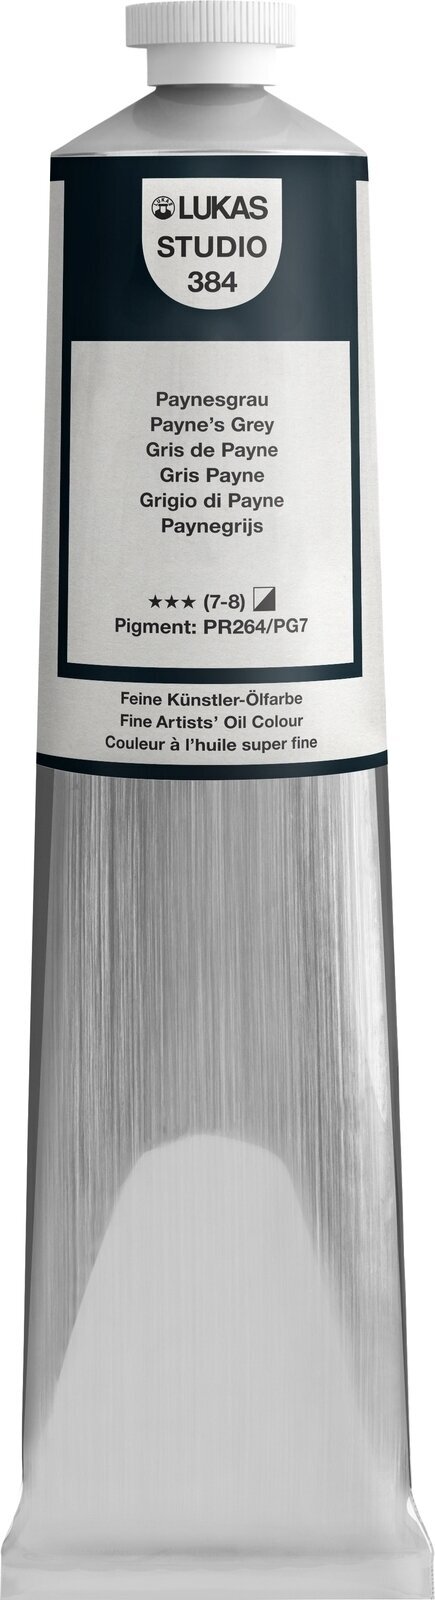 Oliefarve Lukas Studio Oil Paint Aluminium Tube Oliemaling Payne's Grey 200 ml 1 stk.